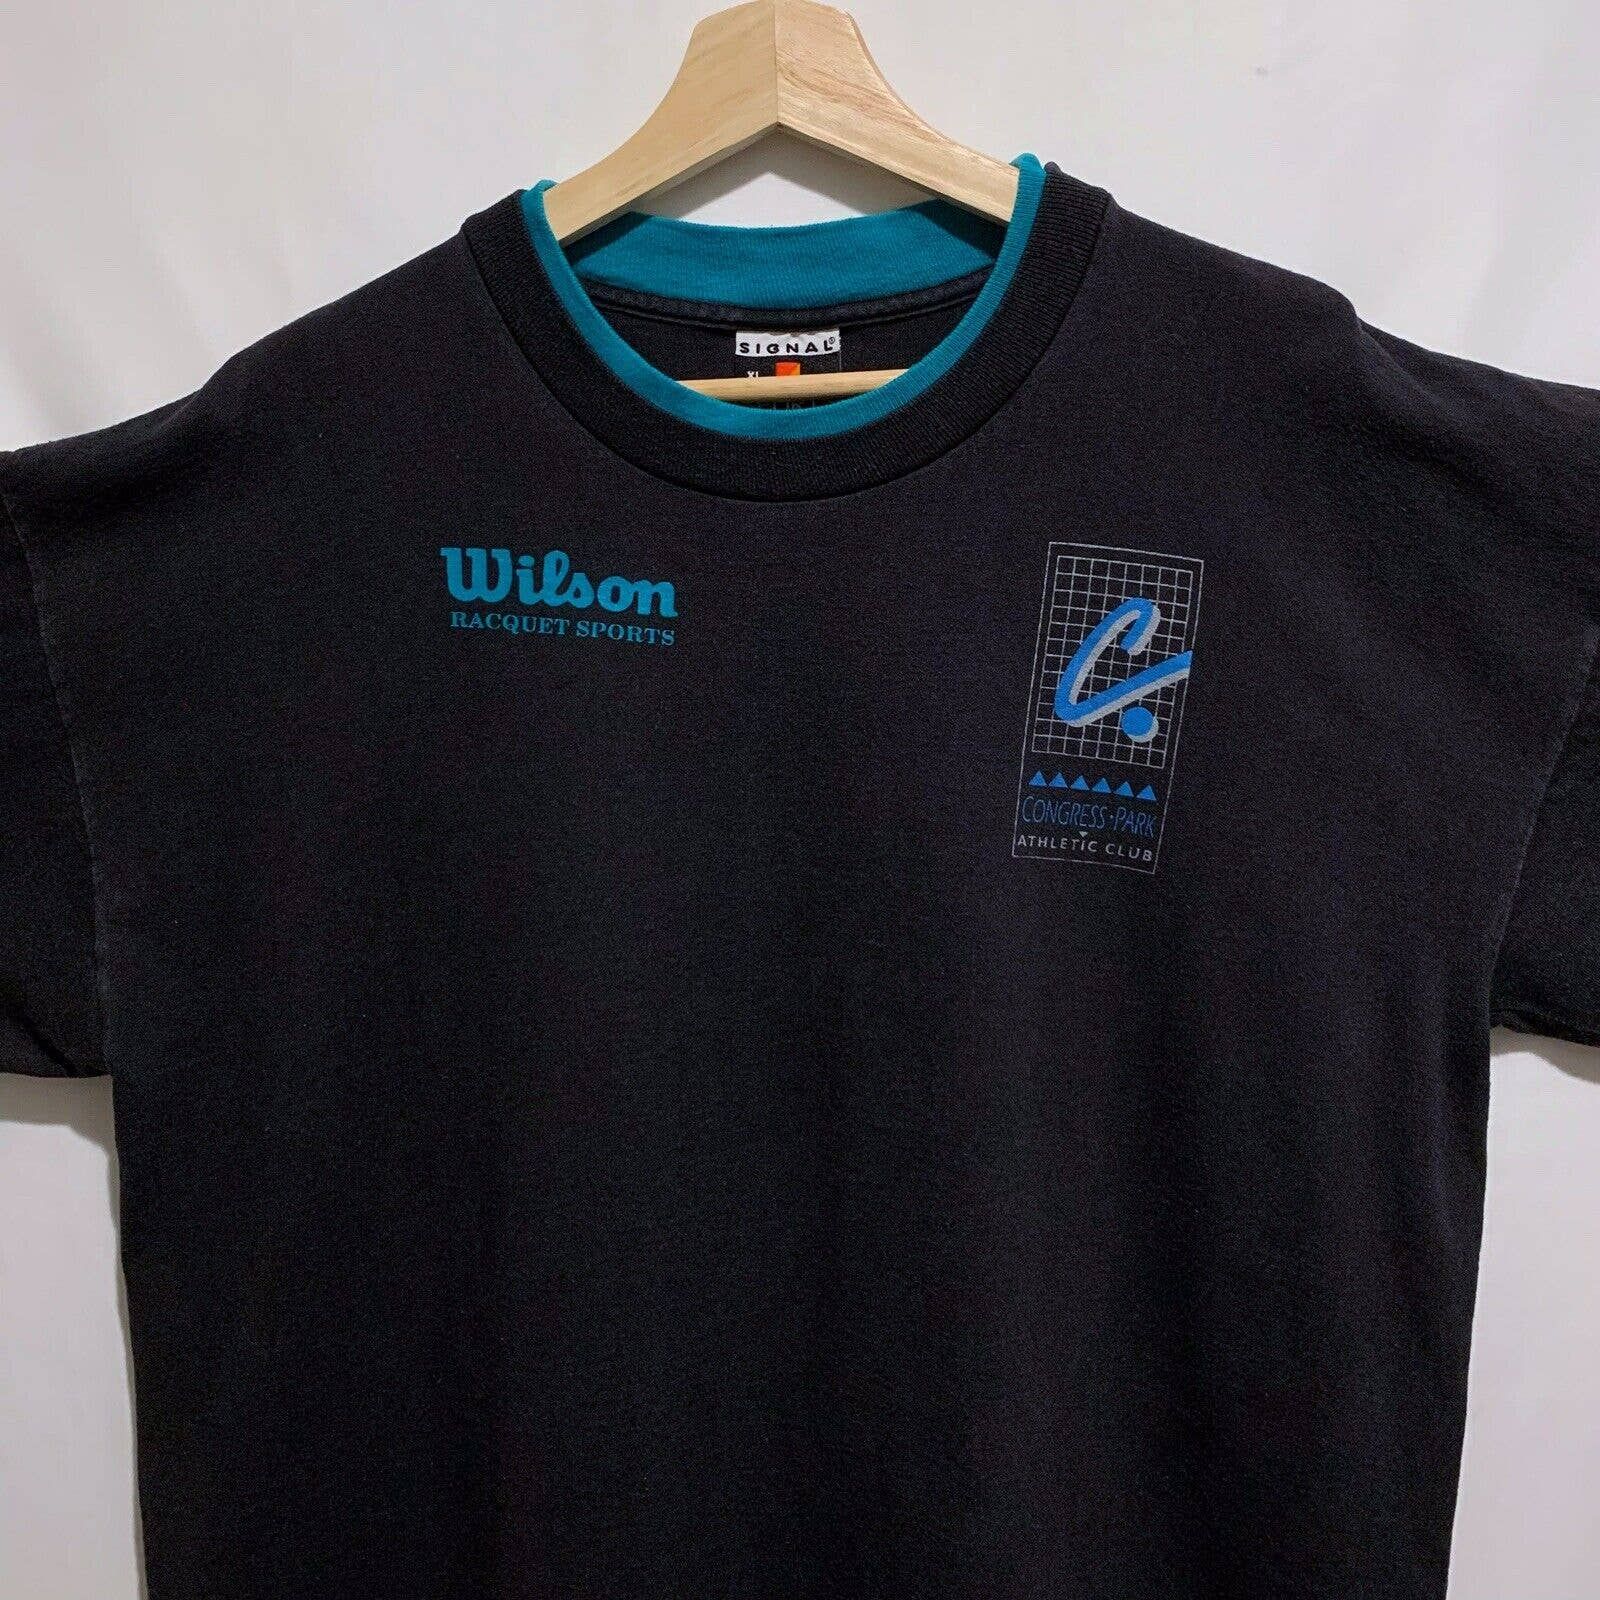 Vintage Vintage 90s Wilson Racquet Sports Rare T Shirt Size XL Black Size US XL / EU 56 / 4 - 1 Preview